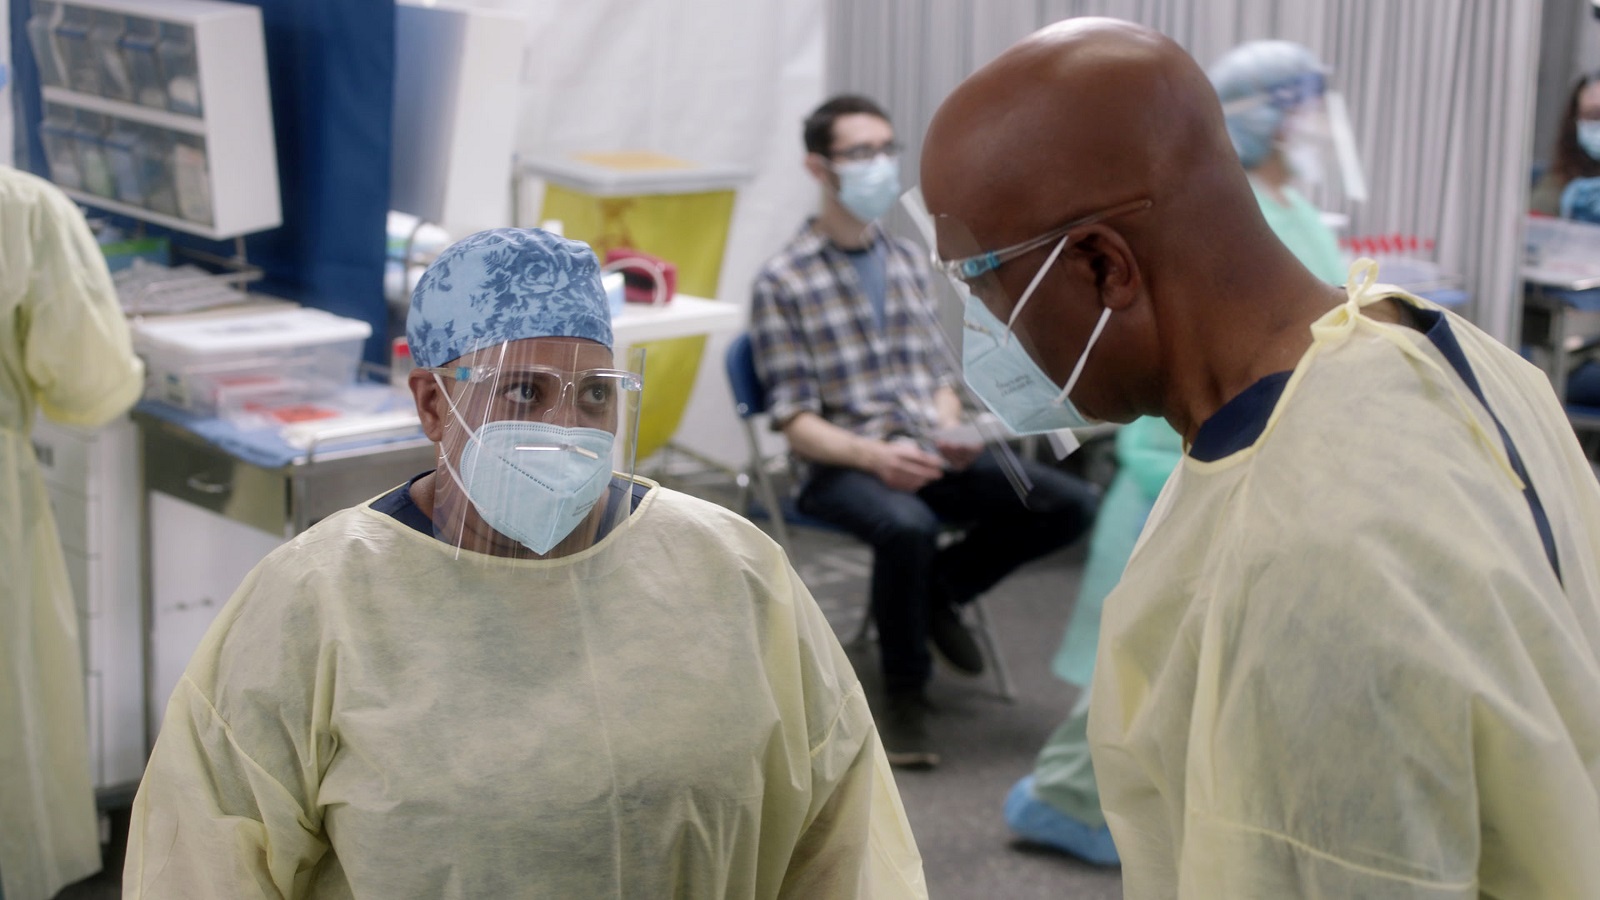 SerieTivu: Grey’s Anatomy 17 primo appuntamento. Con protagonista Ellen Pompeo nel ruolo di Meredith Grey, in prima visione tv free su La7